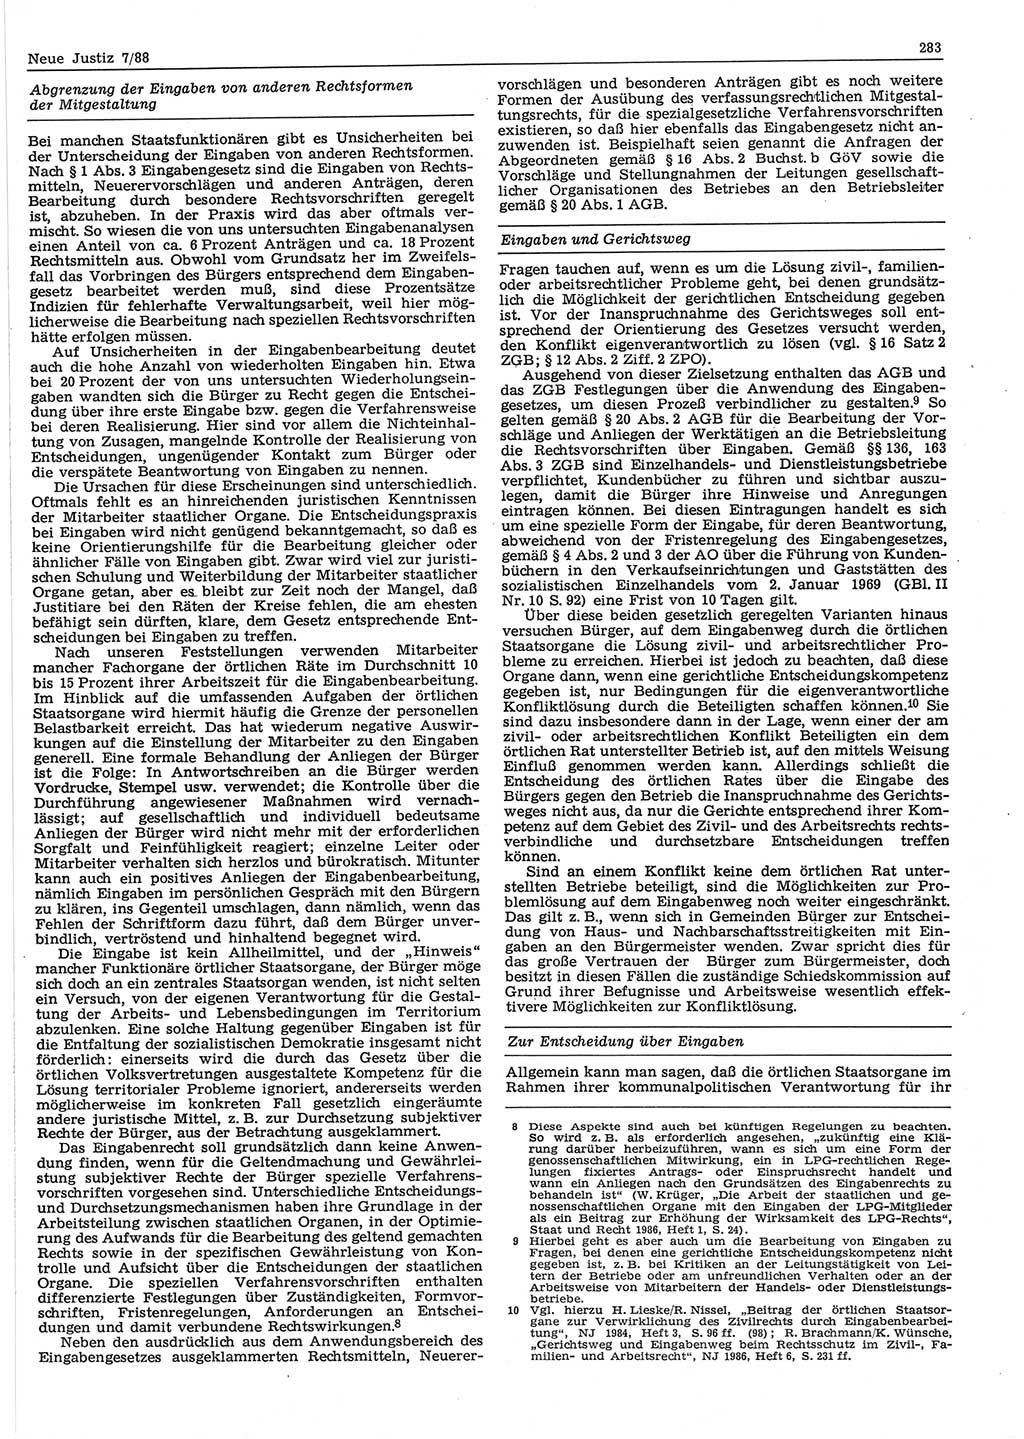 Neue Justiz (NJ), Zeitschrift für sozialistisches Recht und Gesetzlichkeit [Deutsche Demokratische Republik (DDR)], 42. Jahrgang 1988, Seite 283 (NJ DDR 1988, S. 283)